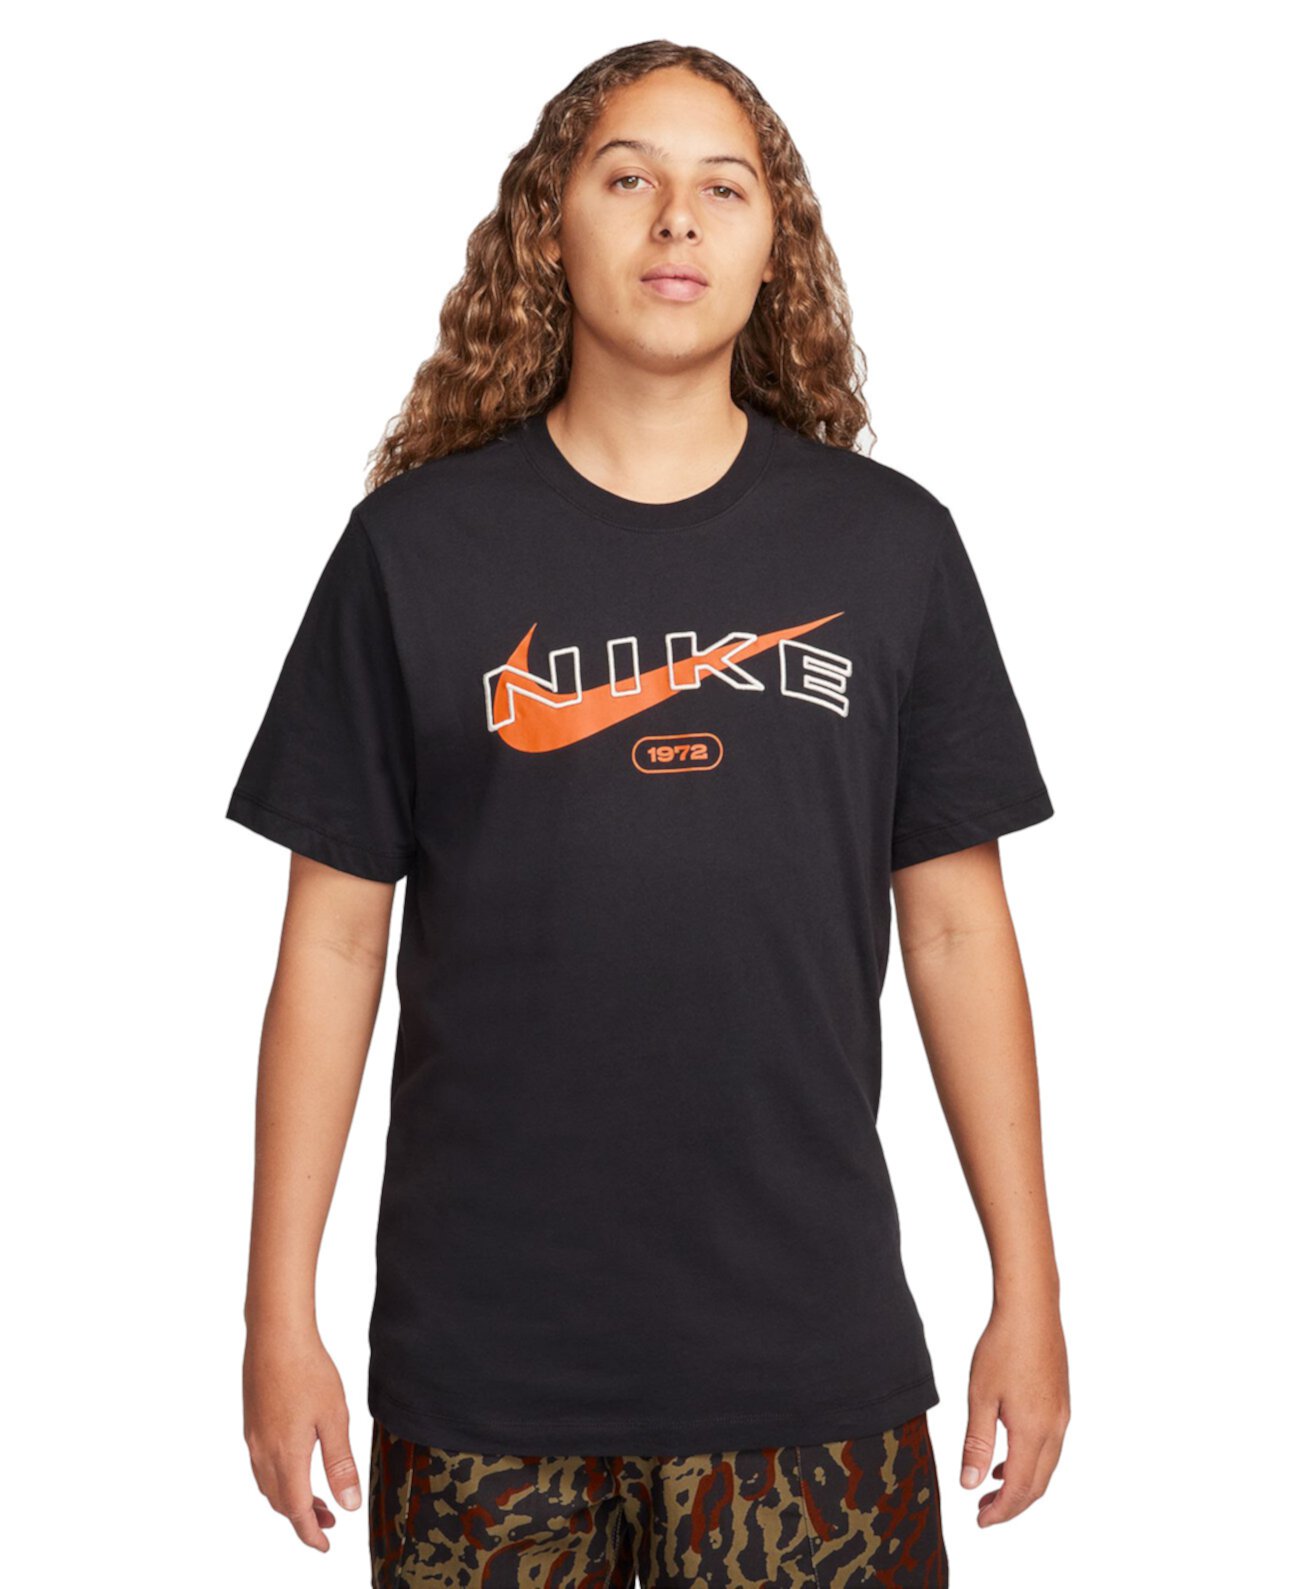 Мужская спортивная футболка с логотипом Swoosh Nike